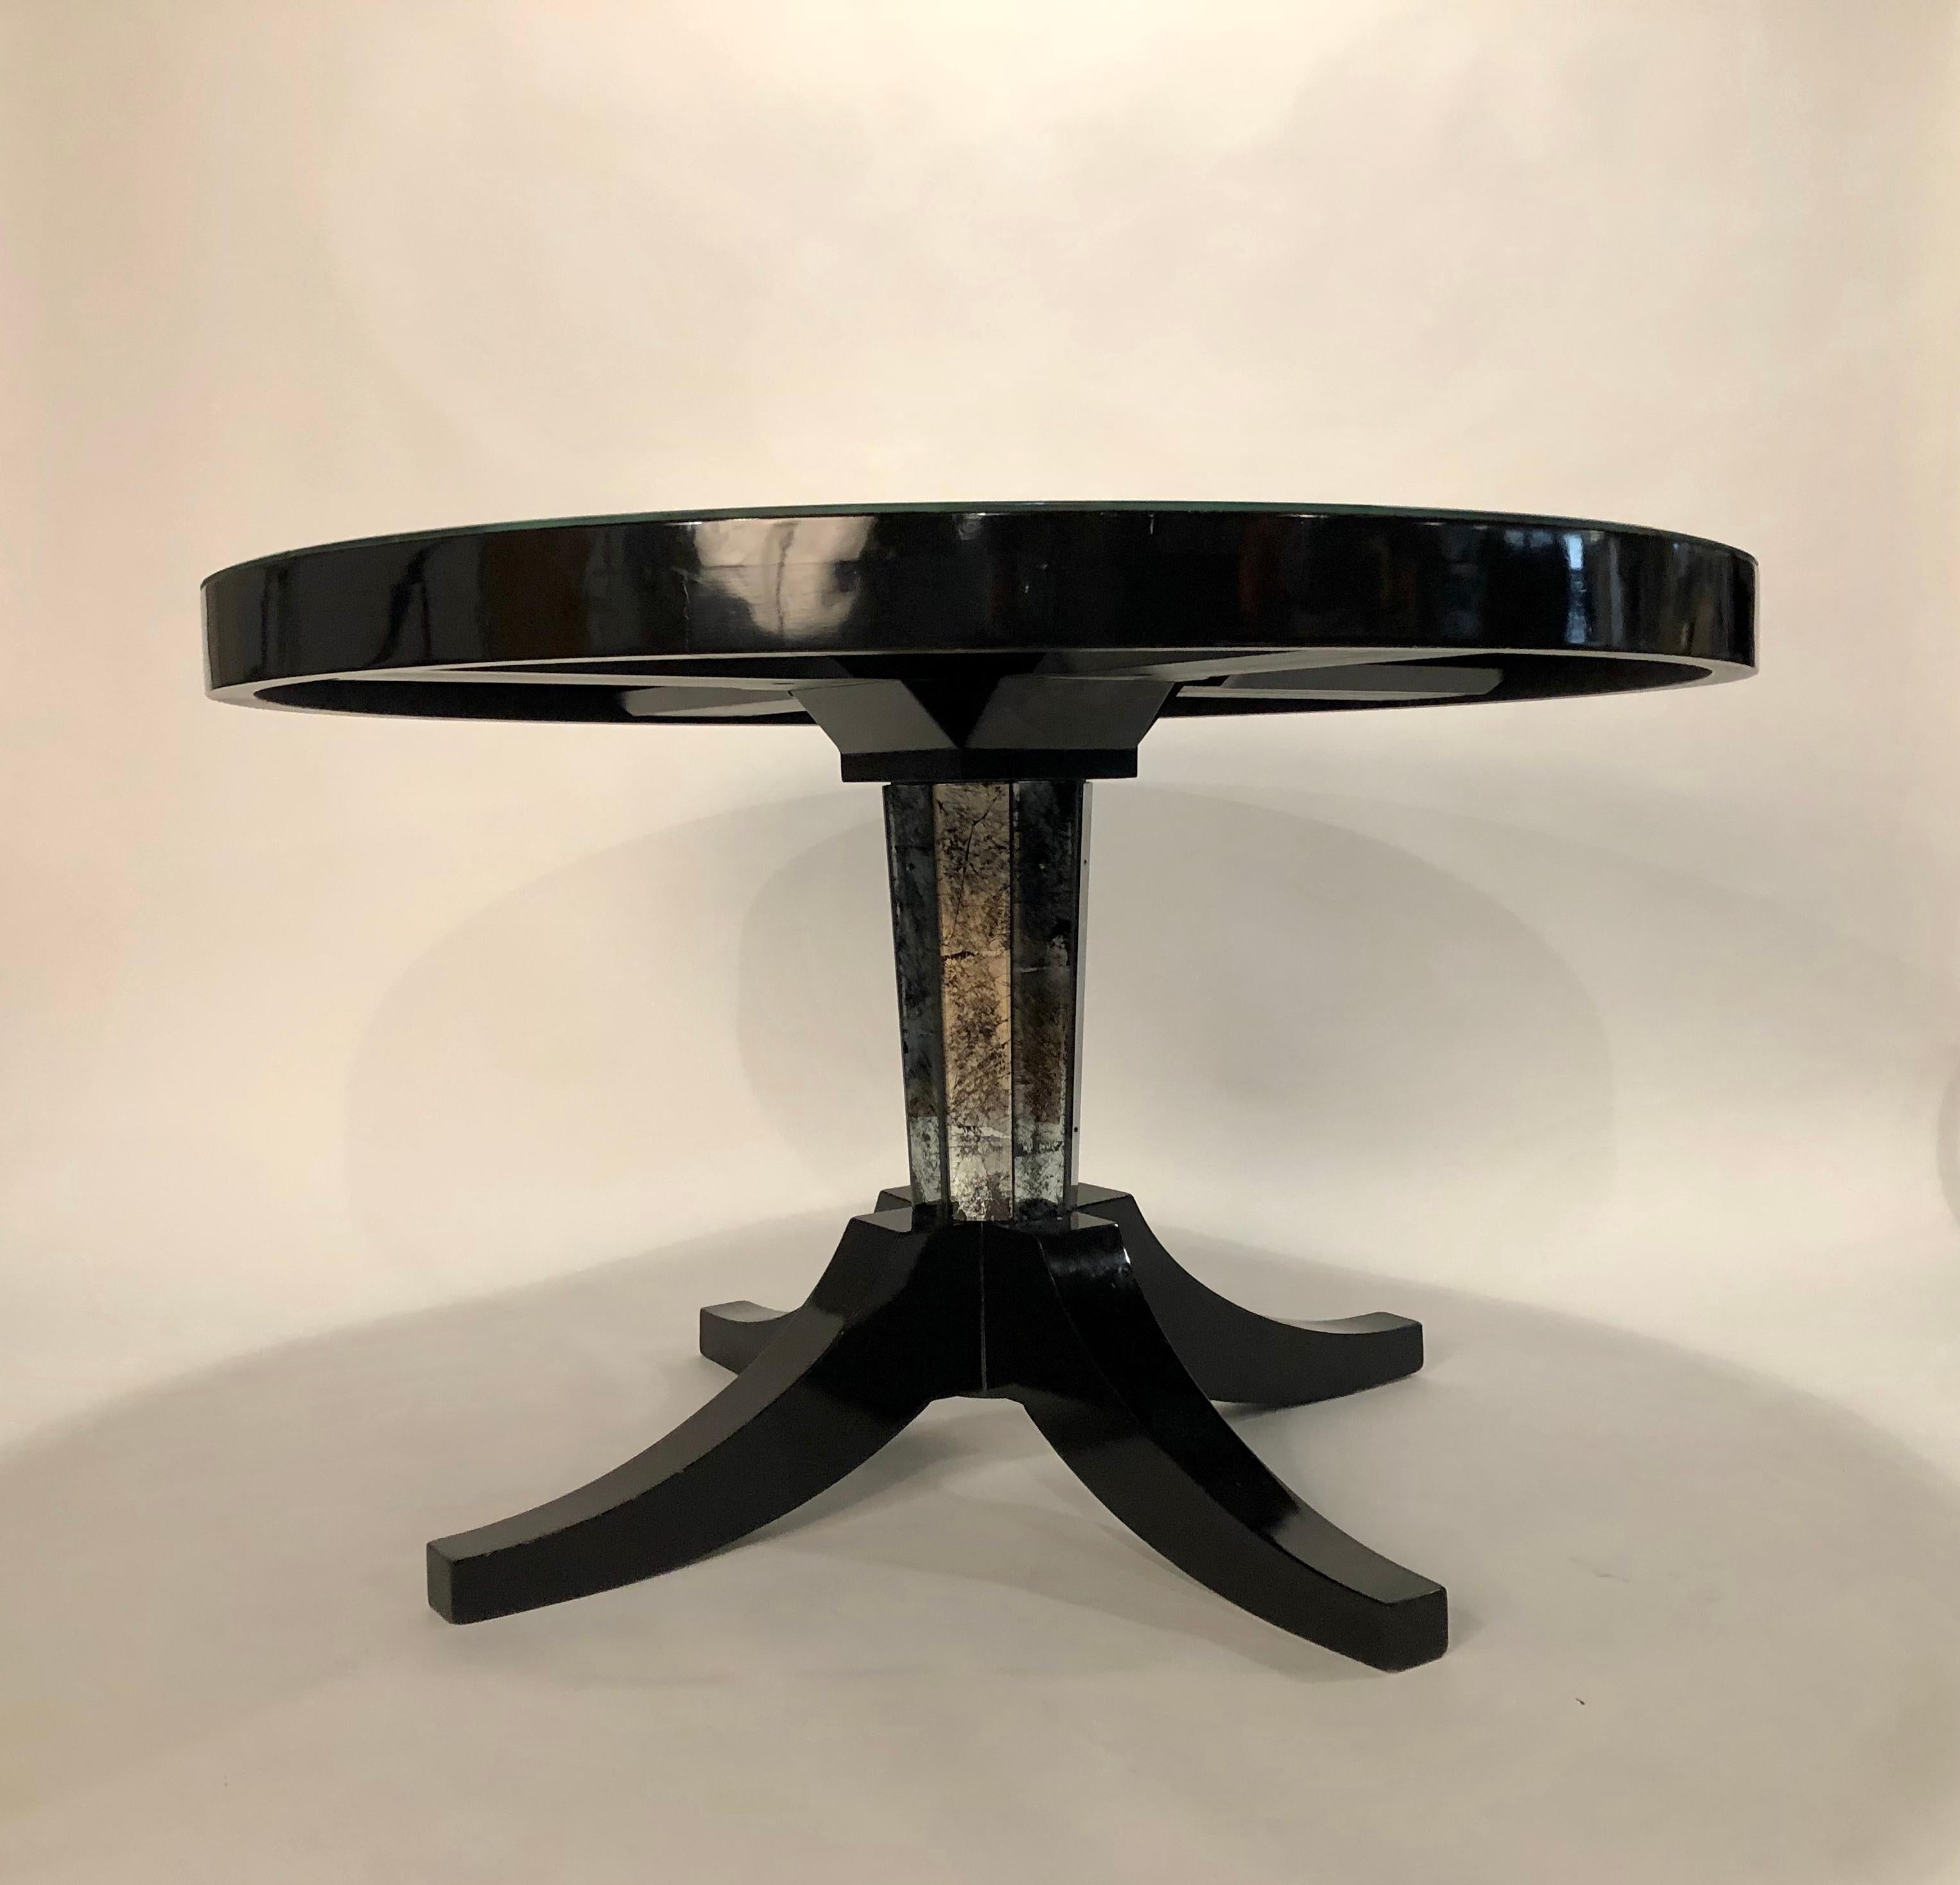 Exquisiter Gueridon-Tisch von Maison Jansen in schwarzem Lack und versilberter/schwarz verspiegelter Platte. Die Kehle des Sockels erinnert an das Églomisé-Oberteil.